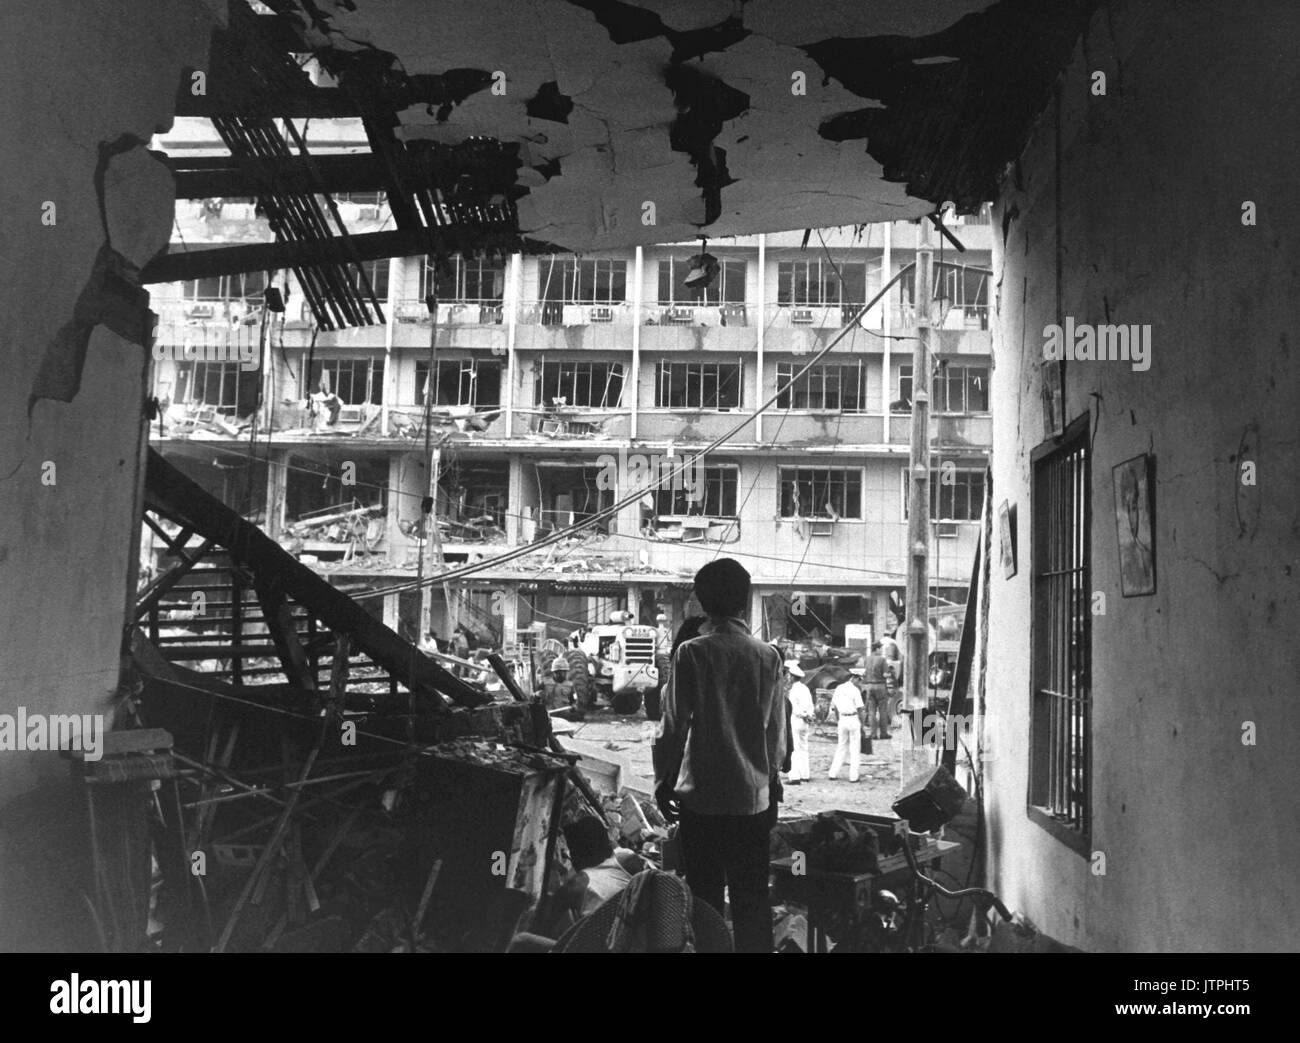 Vier vietnamesischen und drei Amerikaner getötet und Dutzende von vietnamesischen Gebäude wurden stark während einer Viet Cong Bombenanschlag gegen eine mehrstöckige US-Offiziere Billet in Saigon beschädigt. April 1, 1966. JUSPAO. (USIA) NARA DATEI #: 306 - MVP-5-3 Krieg & Konflikt Buch Nr.: 420 Stockfoto